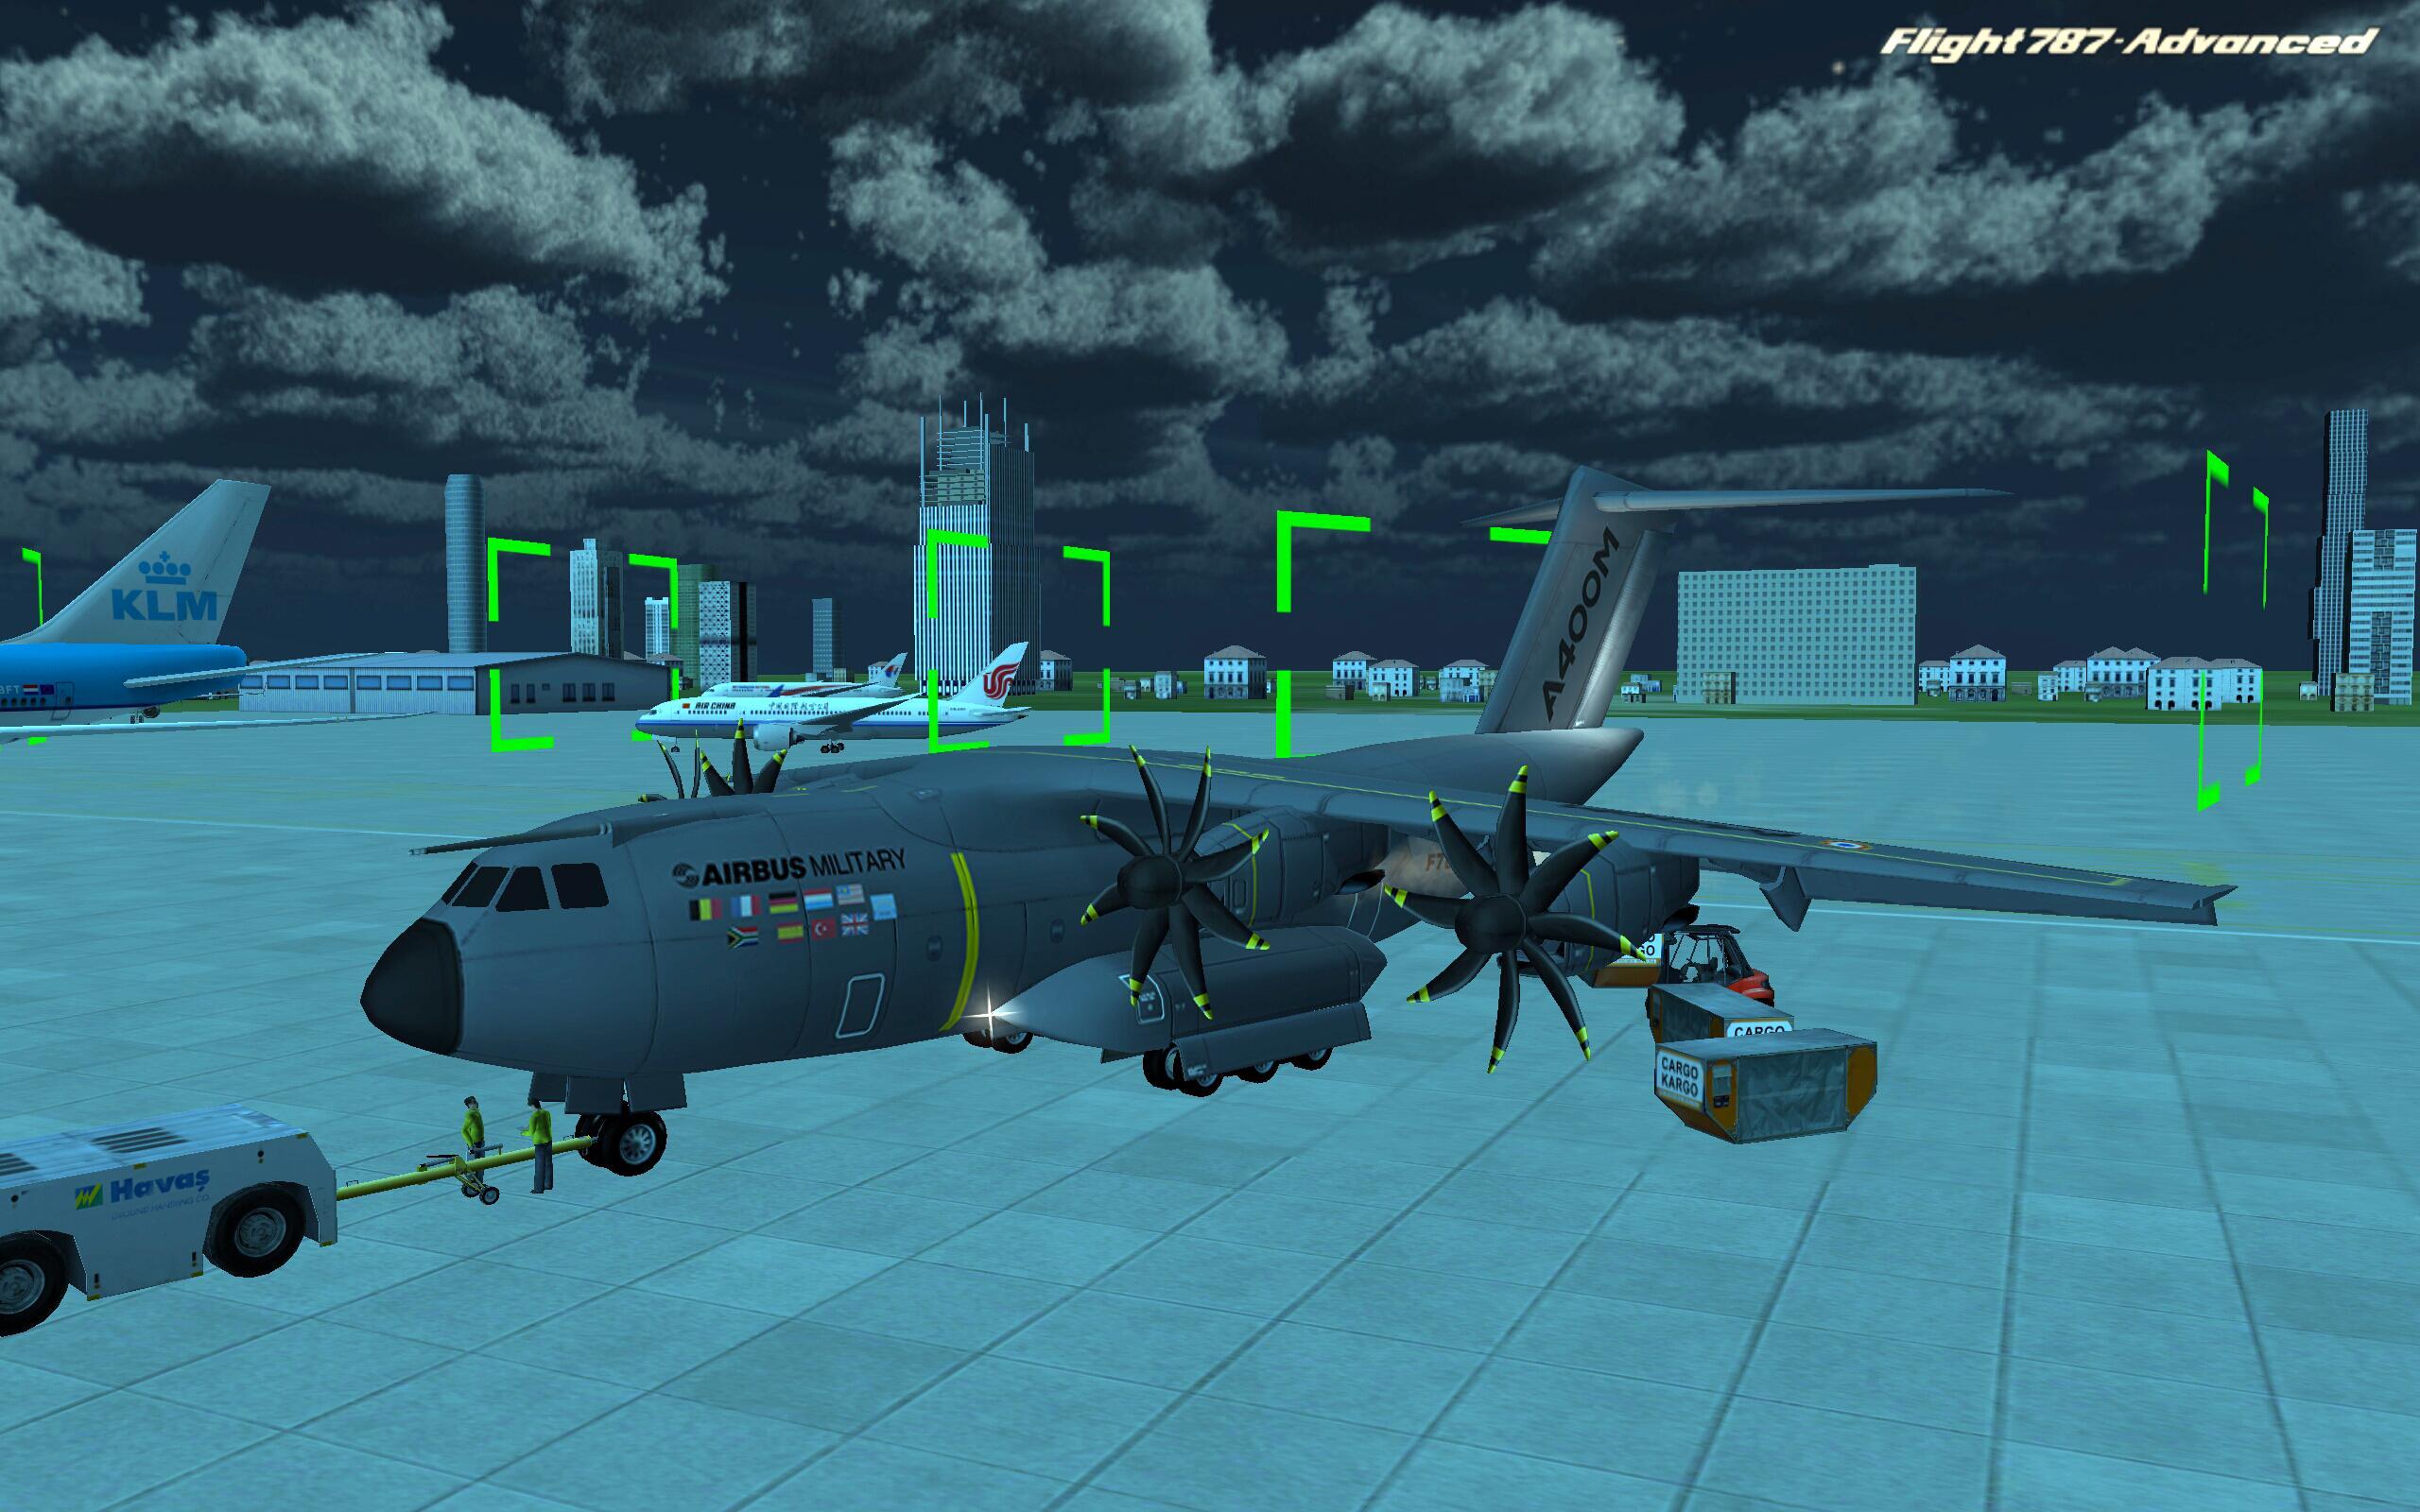 Лучшие игры в самолет. Flight 787 - Advanced. Игры про самолеты. Симулятор военного самолета. Игры про самолёты на андроид.